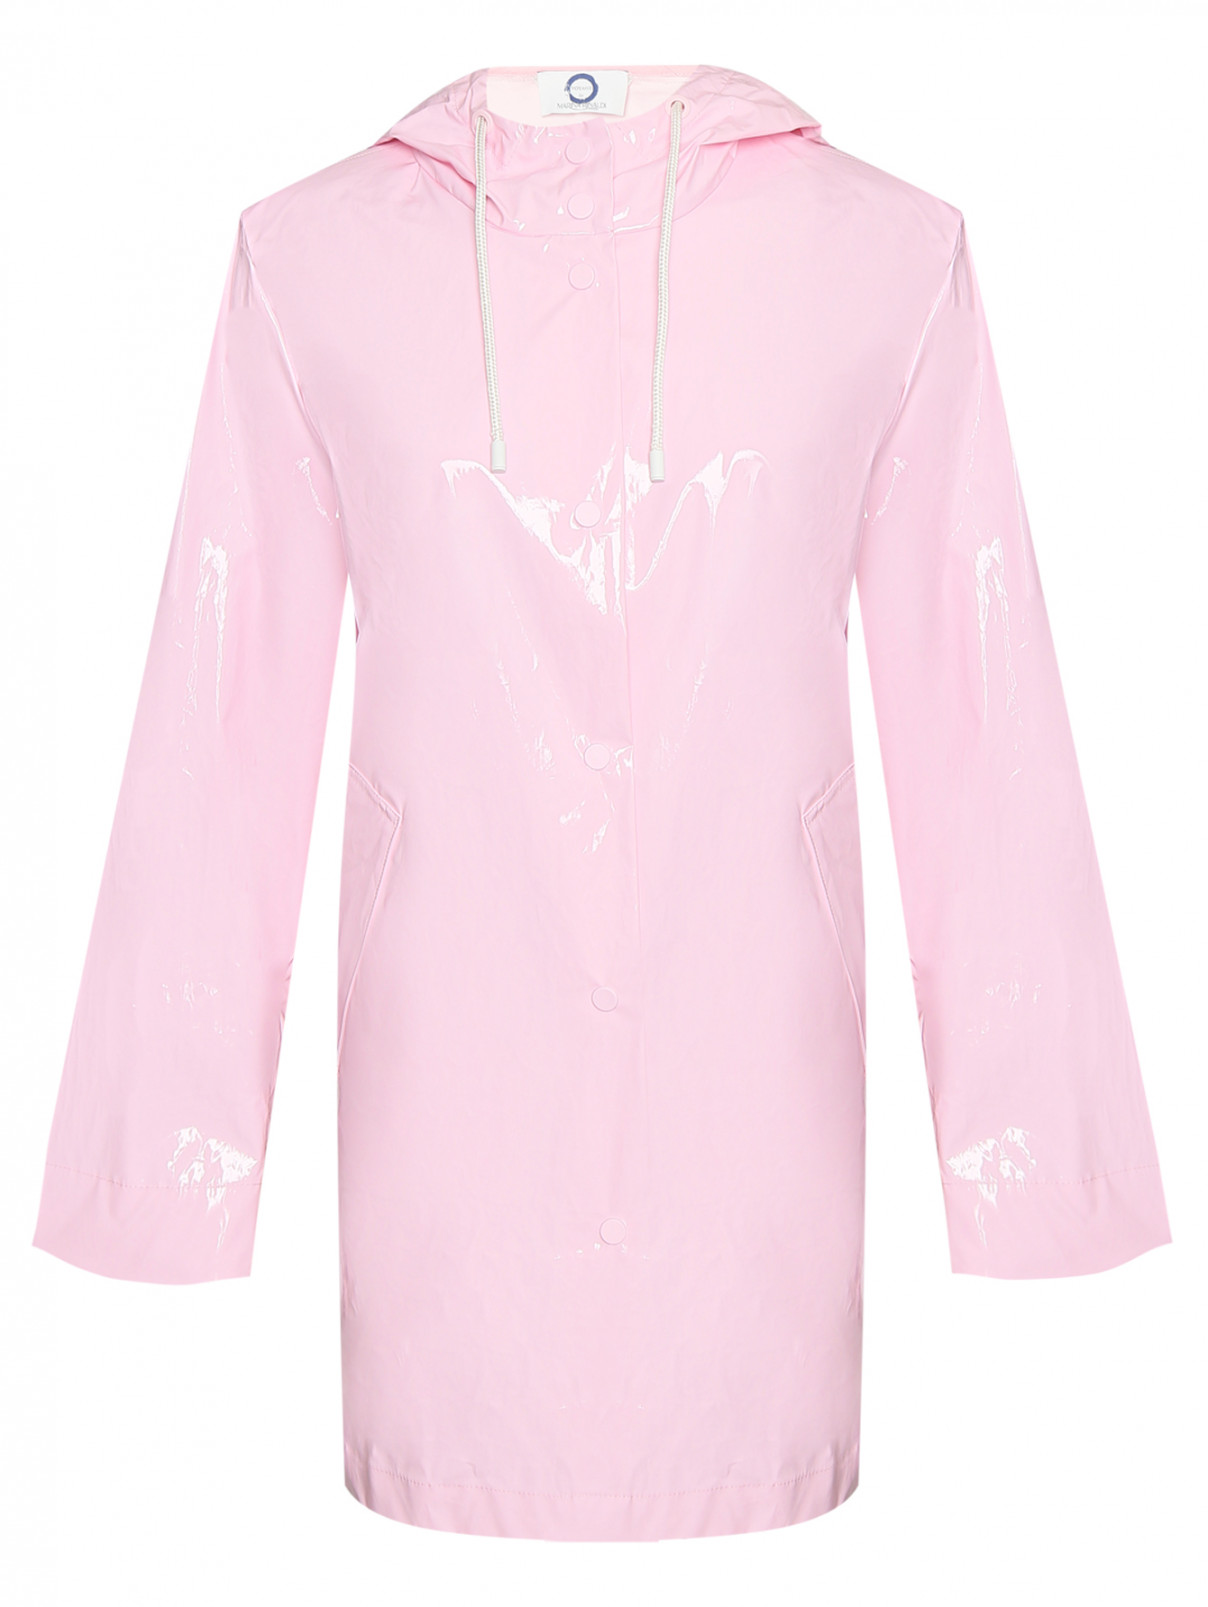 Плащ с карманами и капюшоном Marina Rinaldi  –  Общий вид  – Цвет:  Розовый